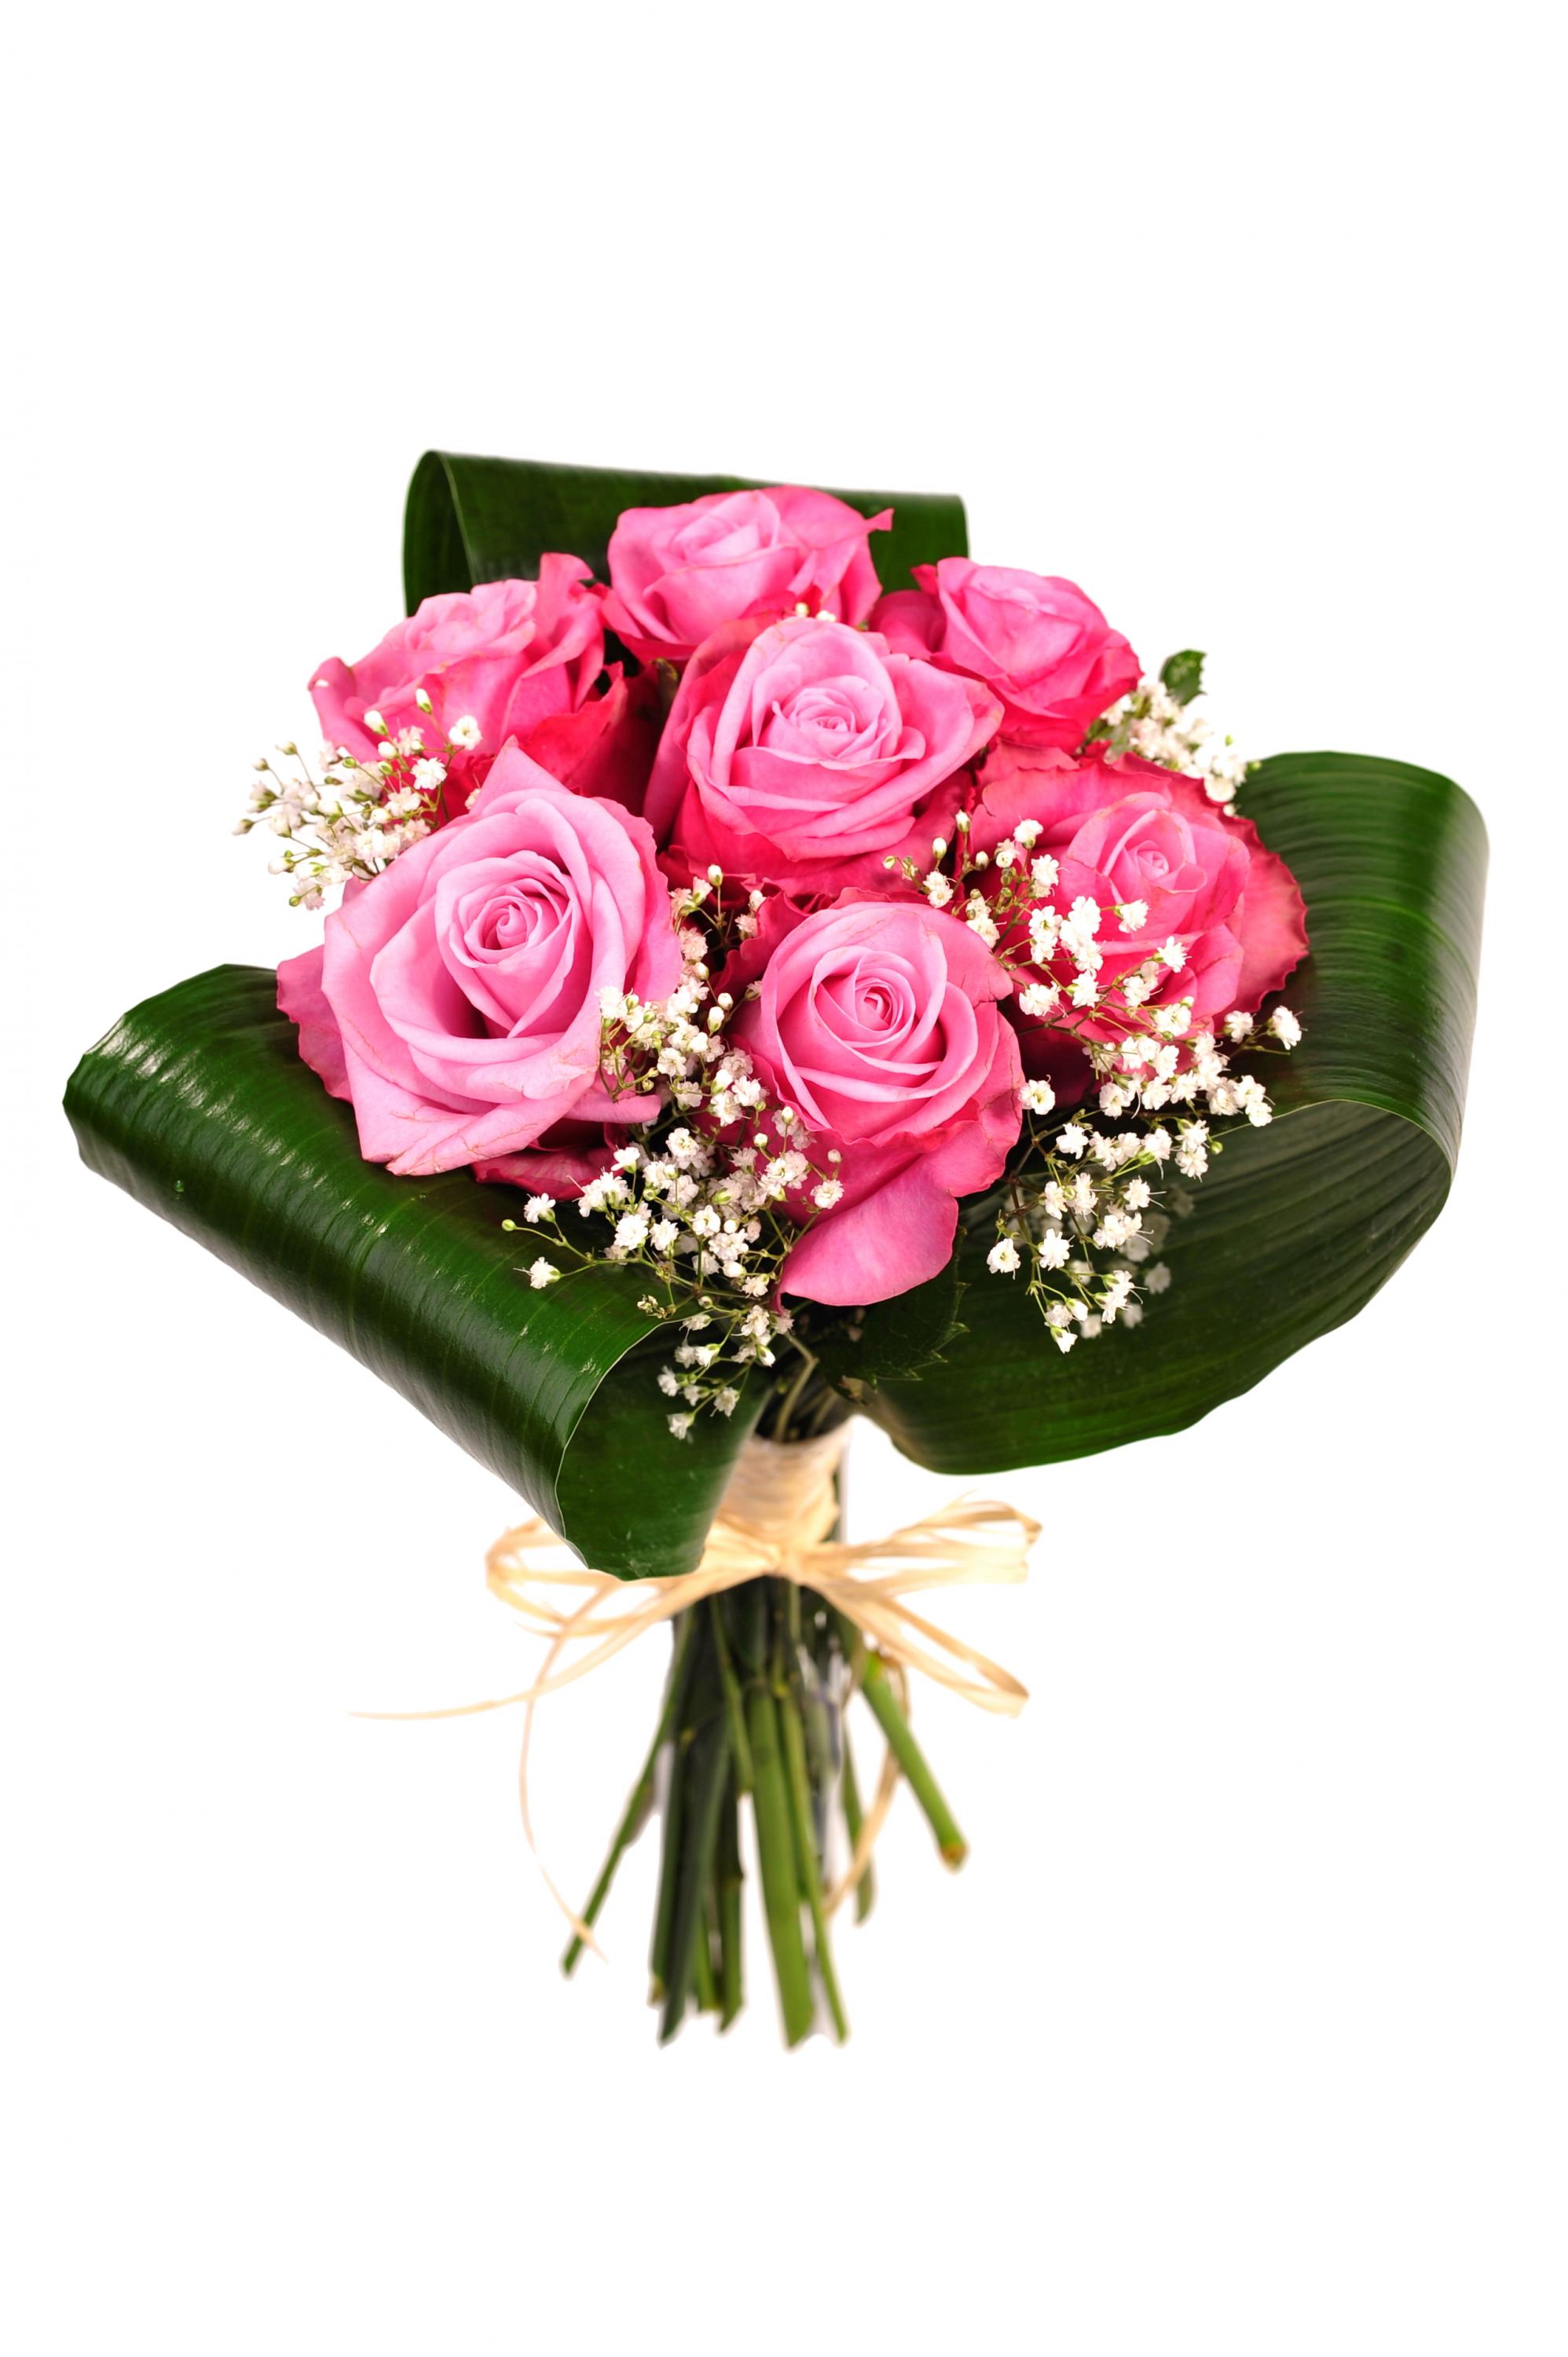 Что добавляют в букет к розам. Букет роз. Красивый букет цветов. Красивый букетик цветов. Небольшие букеты из роз.